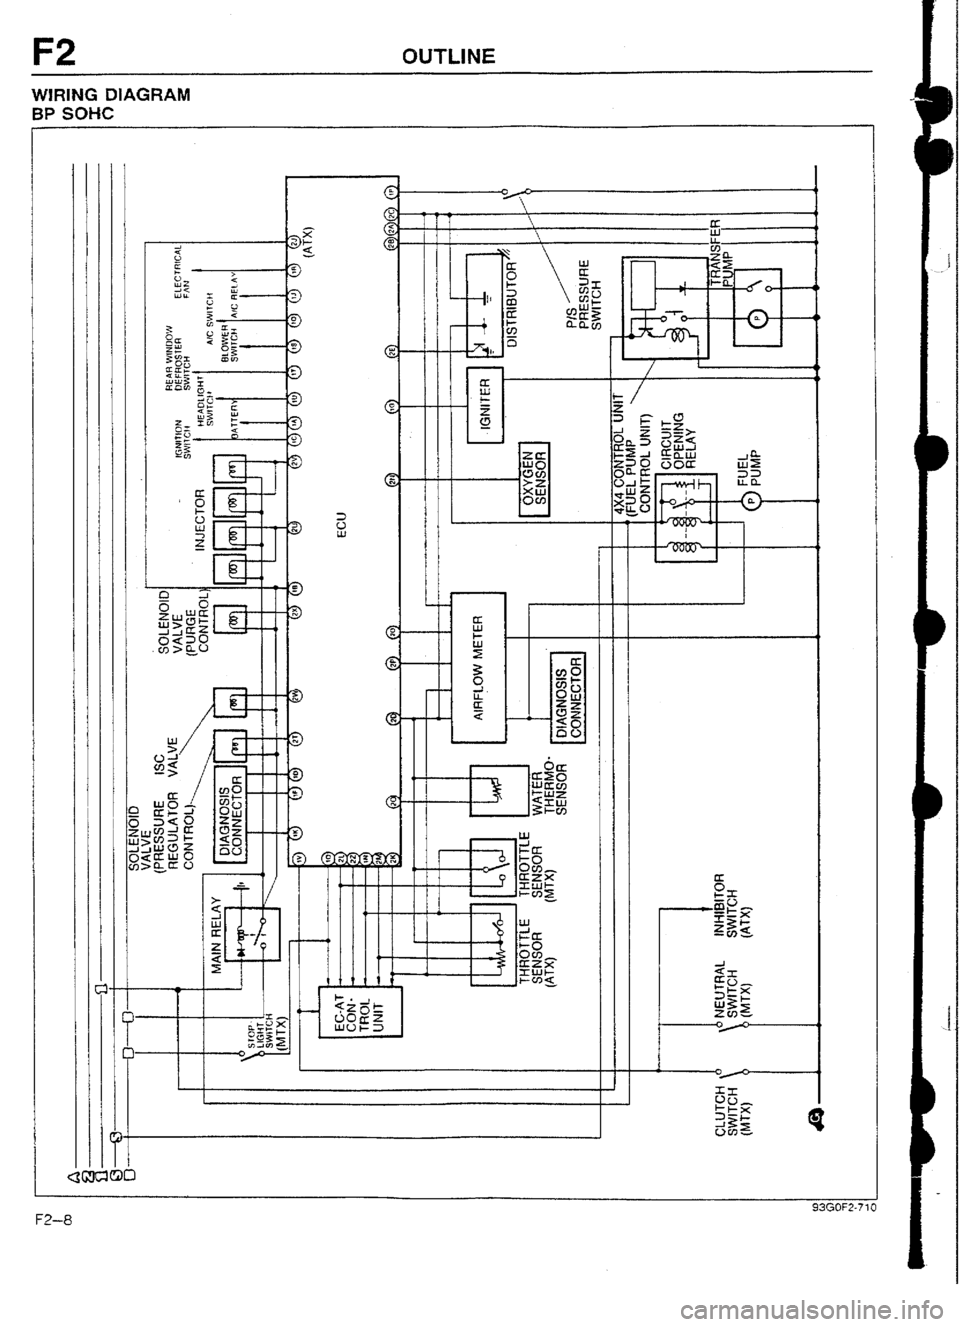 MAZDA 232 1990  Workshop Manual Suplement OUTLINE 
WtRlNG DIAGRAM 
BP SOHC 
r- 
- 
93GOF2-71, FZ-8  